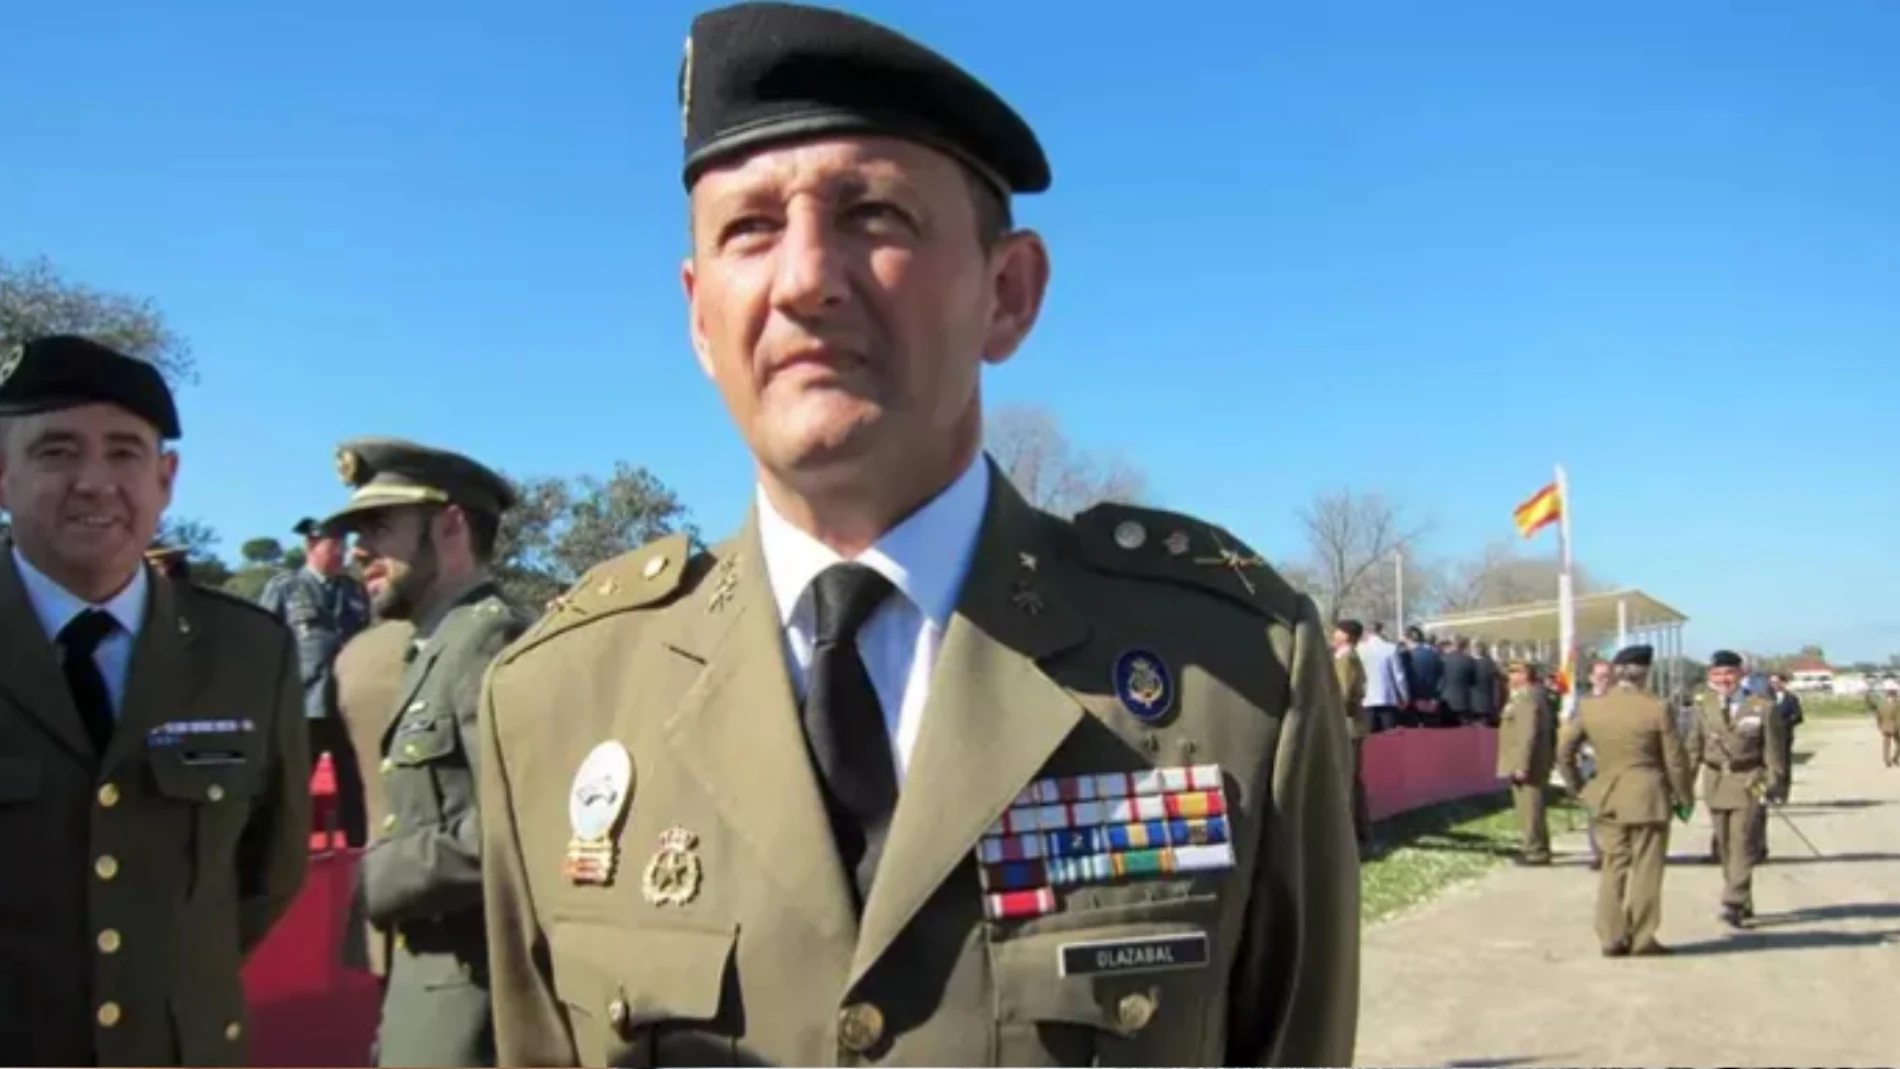 El nuevo general jefe de la Brigada 'Guzmán el Bueno' X, Ignacio Olazábal Elorz